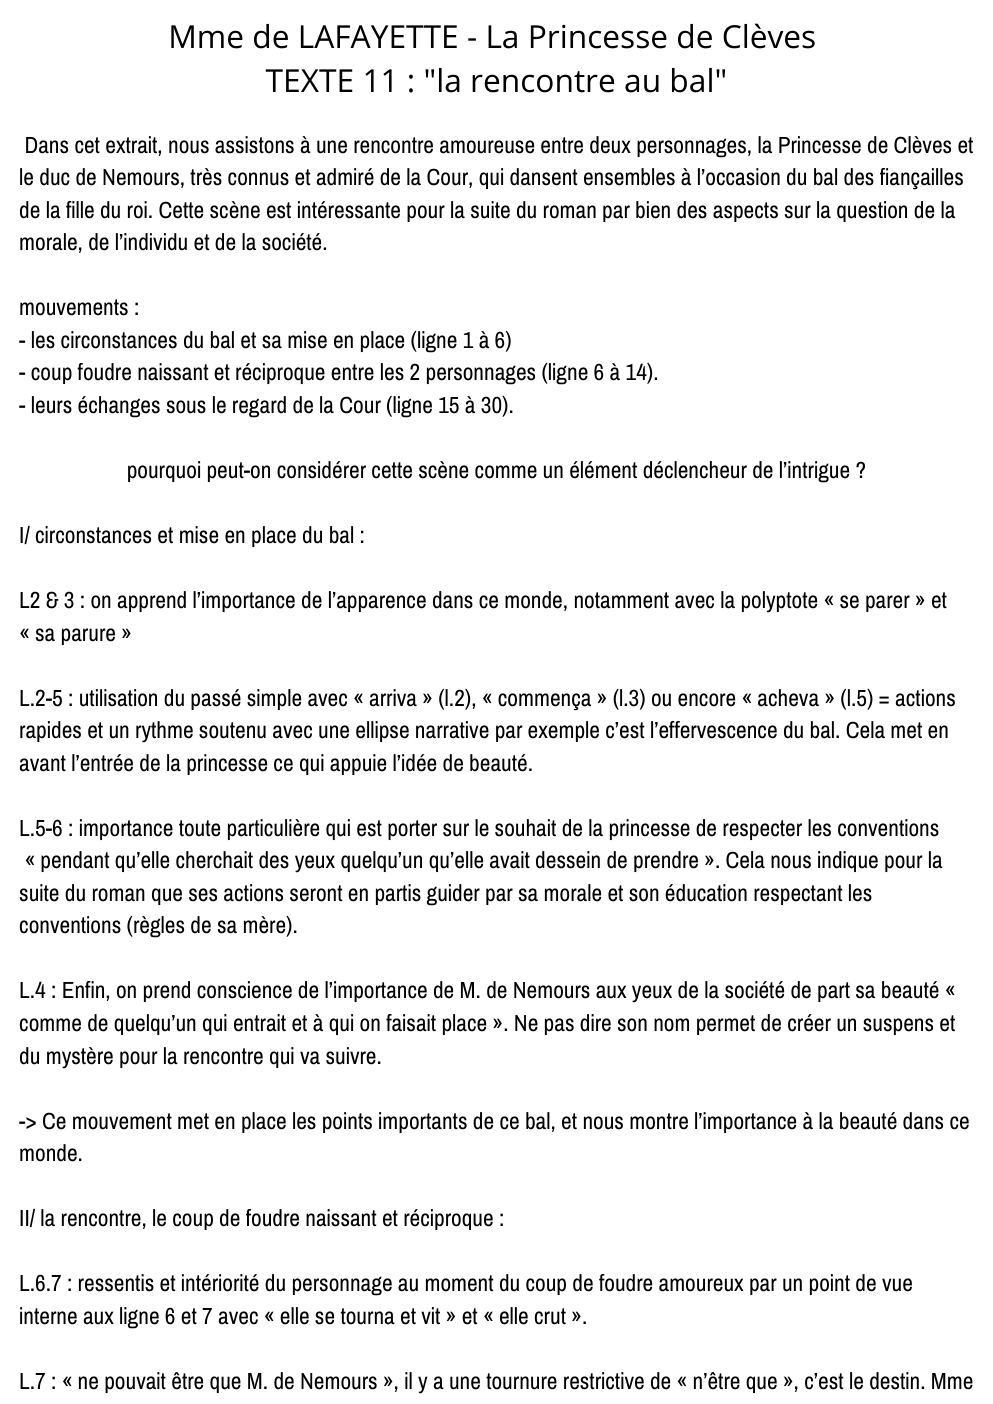 Prévisualisation du document Mme de LAFAYETTE - La Princesse de Clèves TEXTE 11 : "la rencontre au bal"